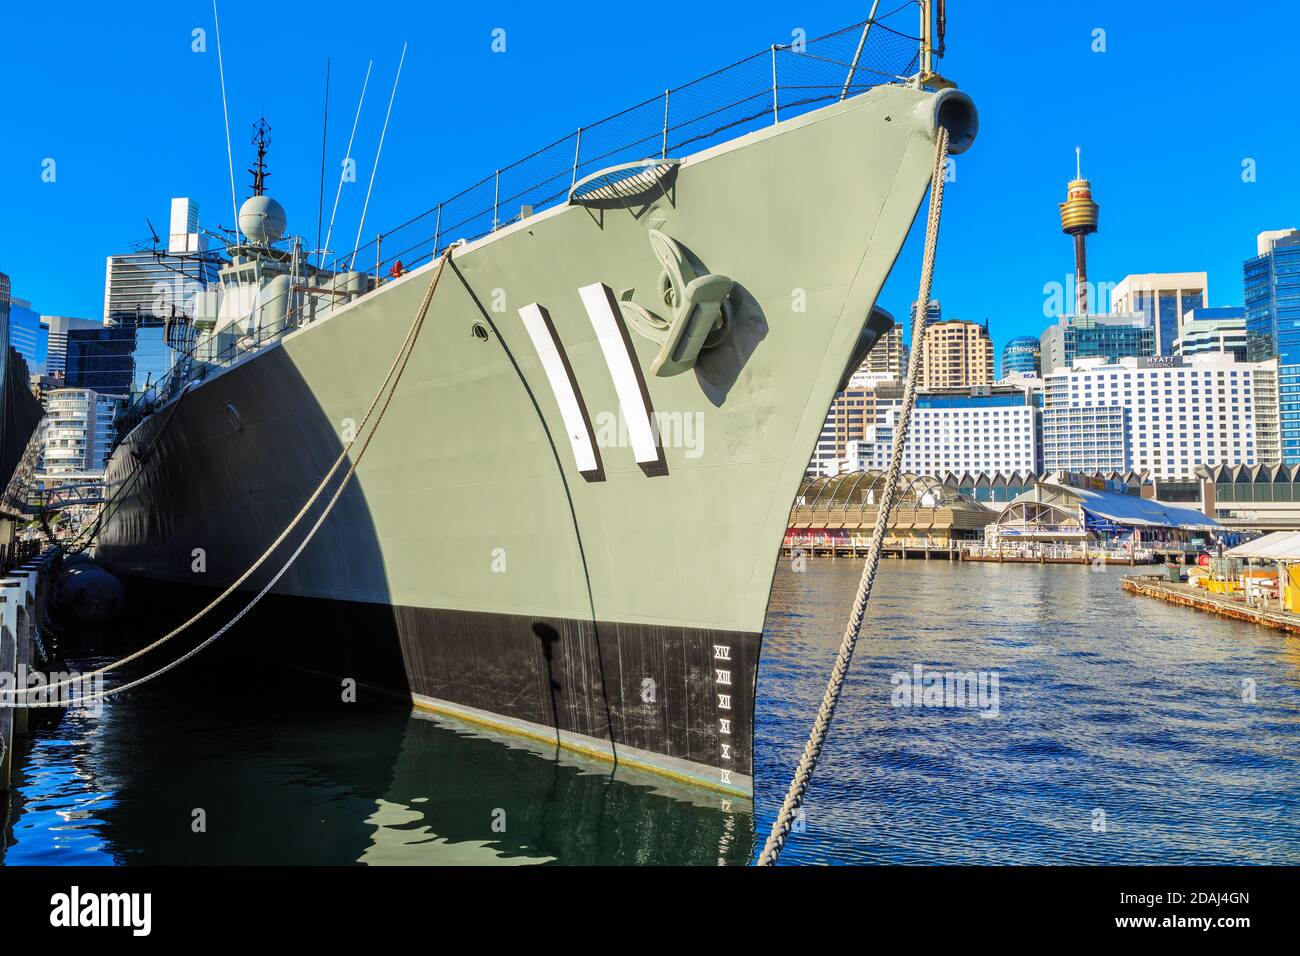 Bug des australischen Zerstörers HMAS 'Vampire', 1956 gestartet und heute ein Museumsschiff in Darling Harbour, Sydney, Australien Stockfoto